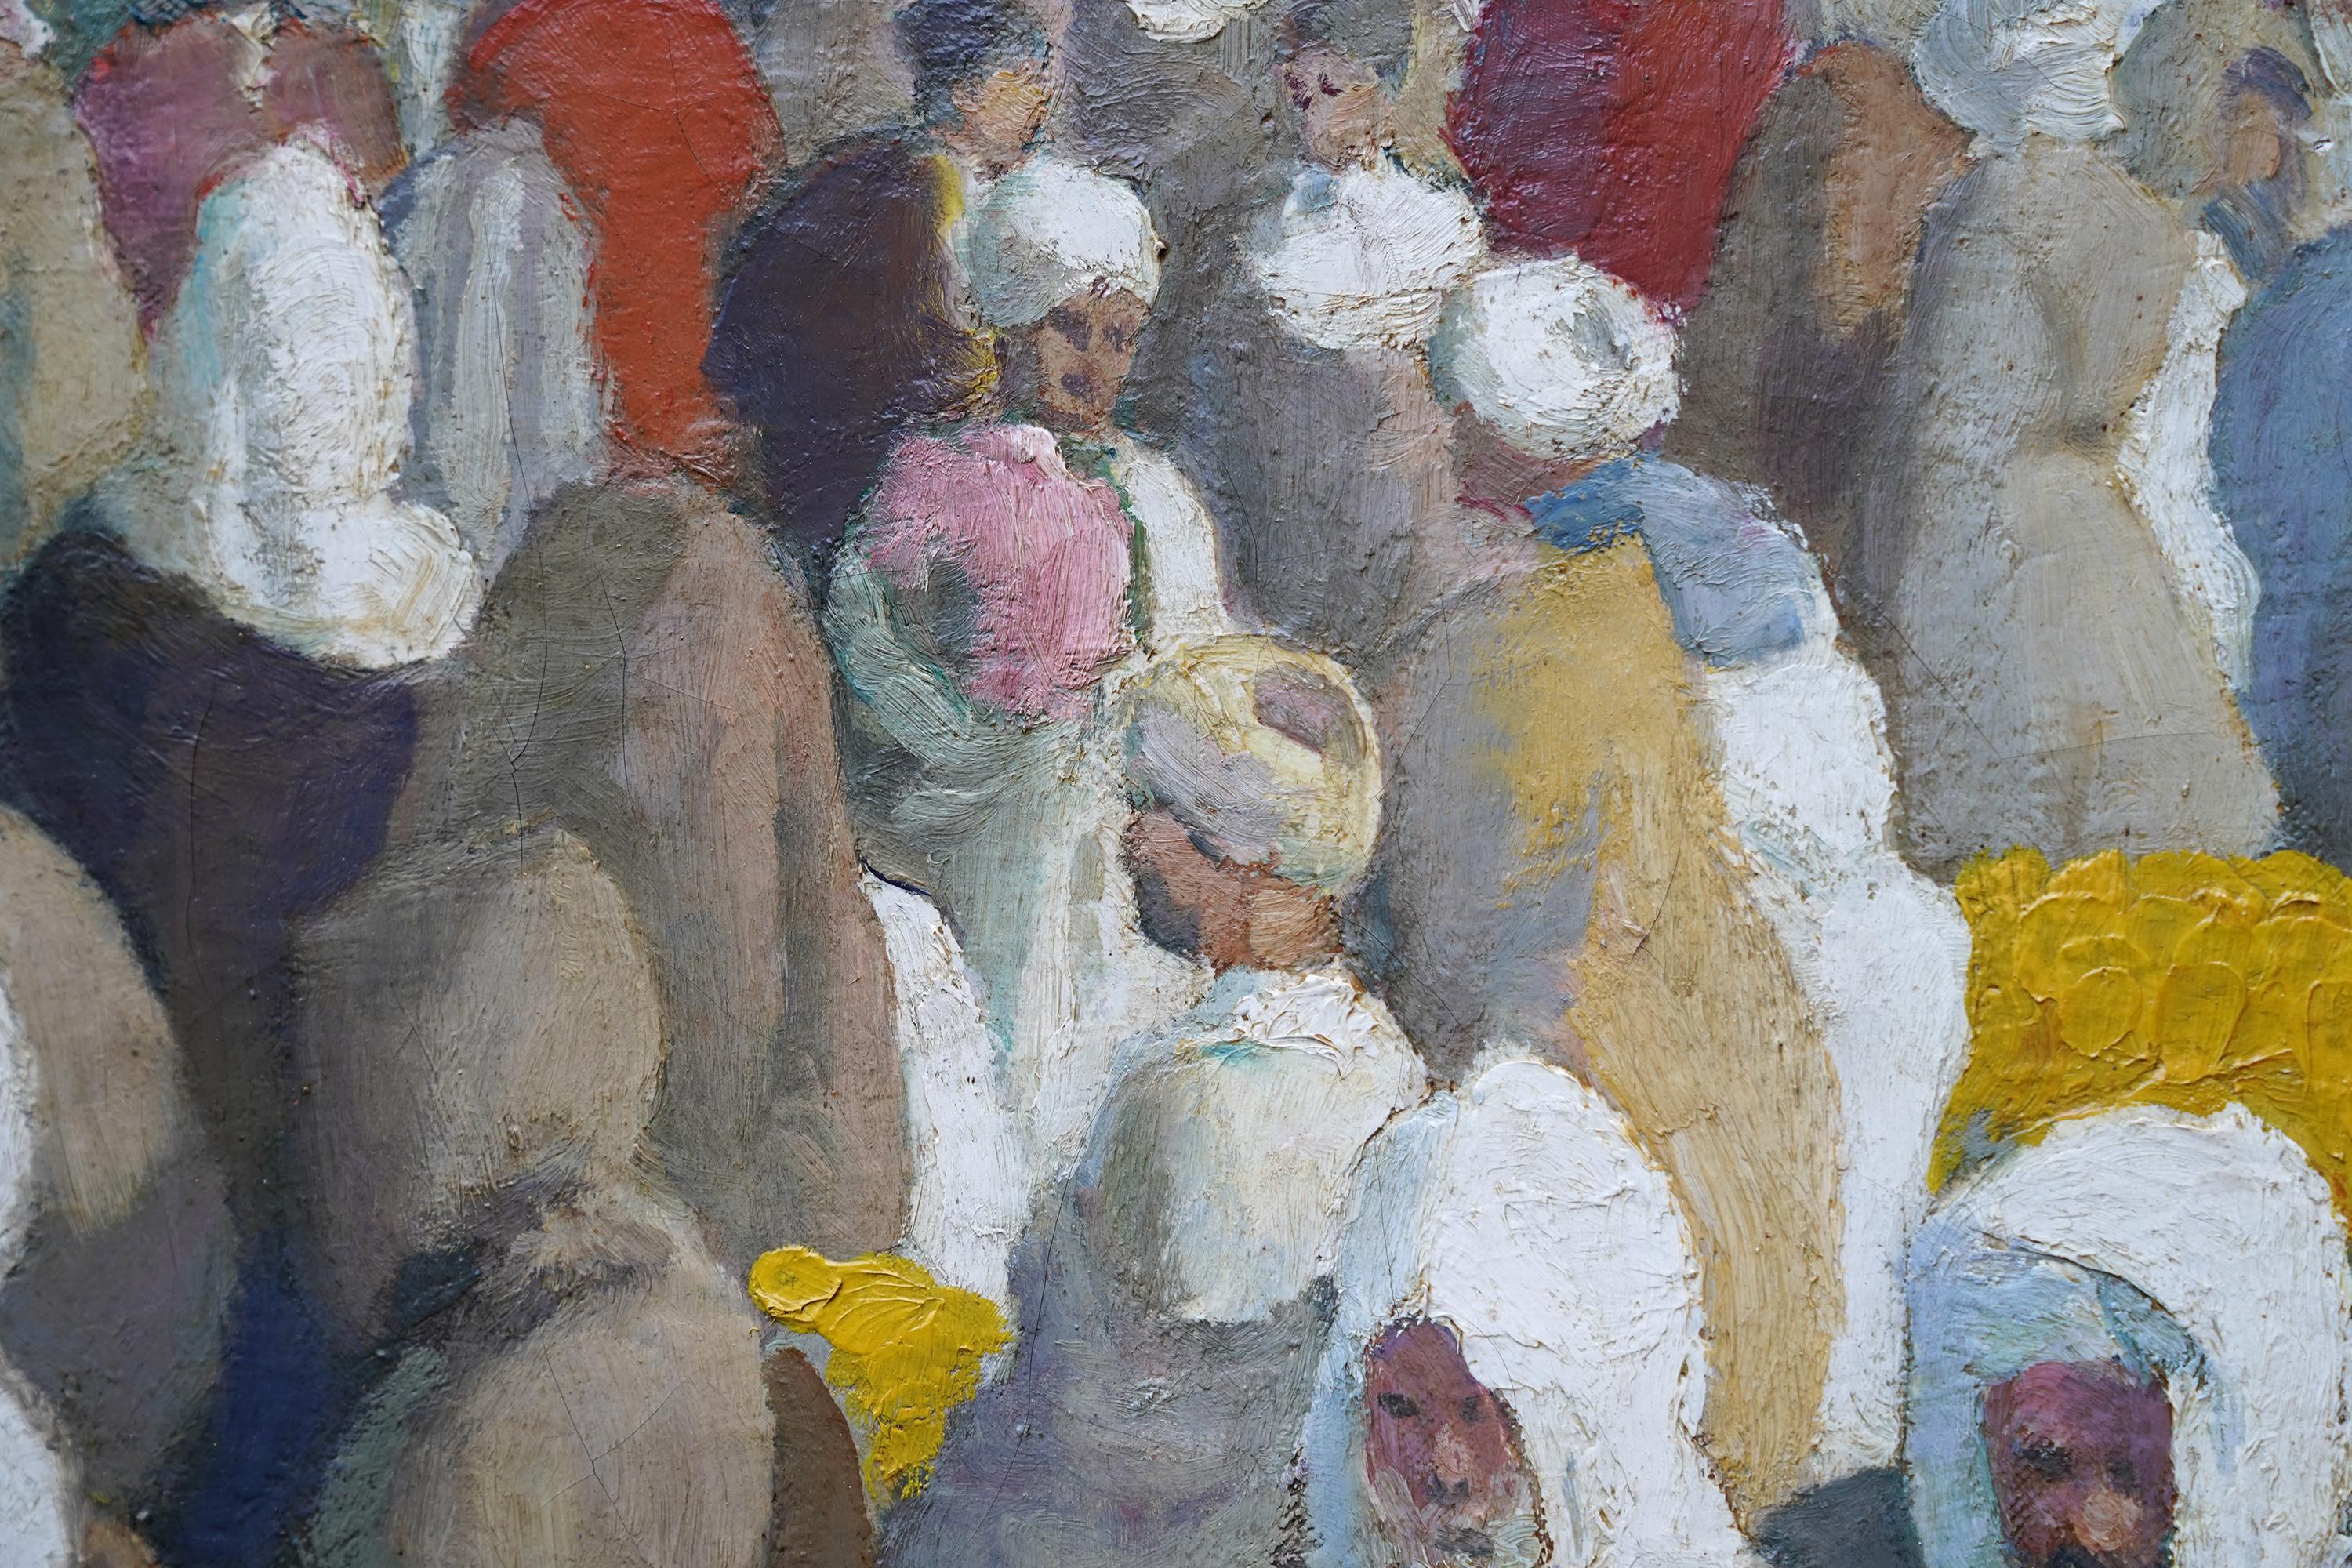 Dieses prächtige, lebhafte orientalische Ölgemälde im Postimpressionismus stammt von dem bekannten britischen Künstler Gerald Spencer Pryse. Es wurde um 1925 gemalt, als Pryse zum ersten Mal Marokko besuchte. Er war von dem Land und der Kultur so